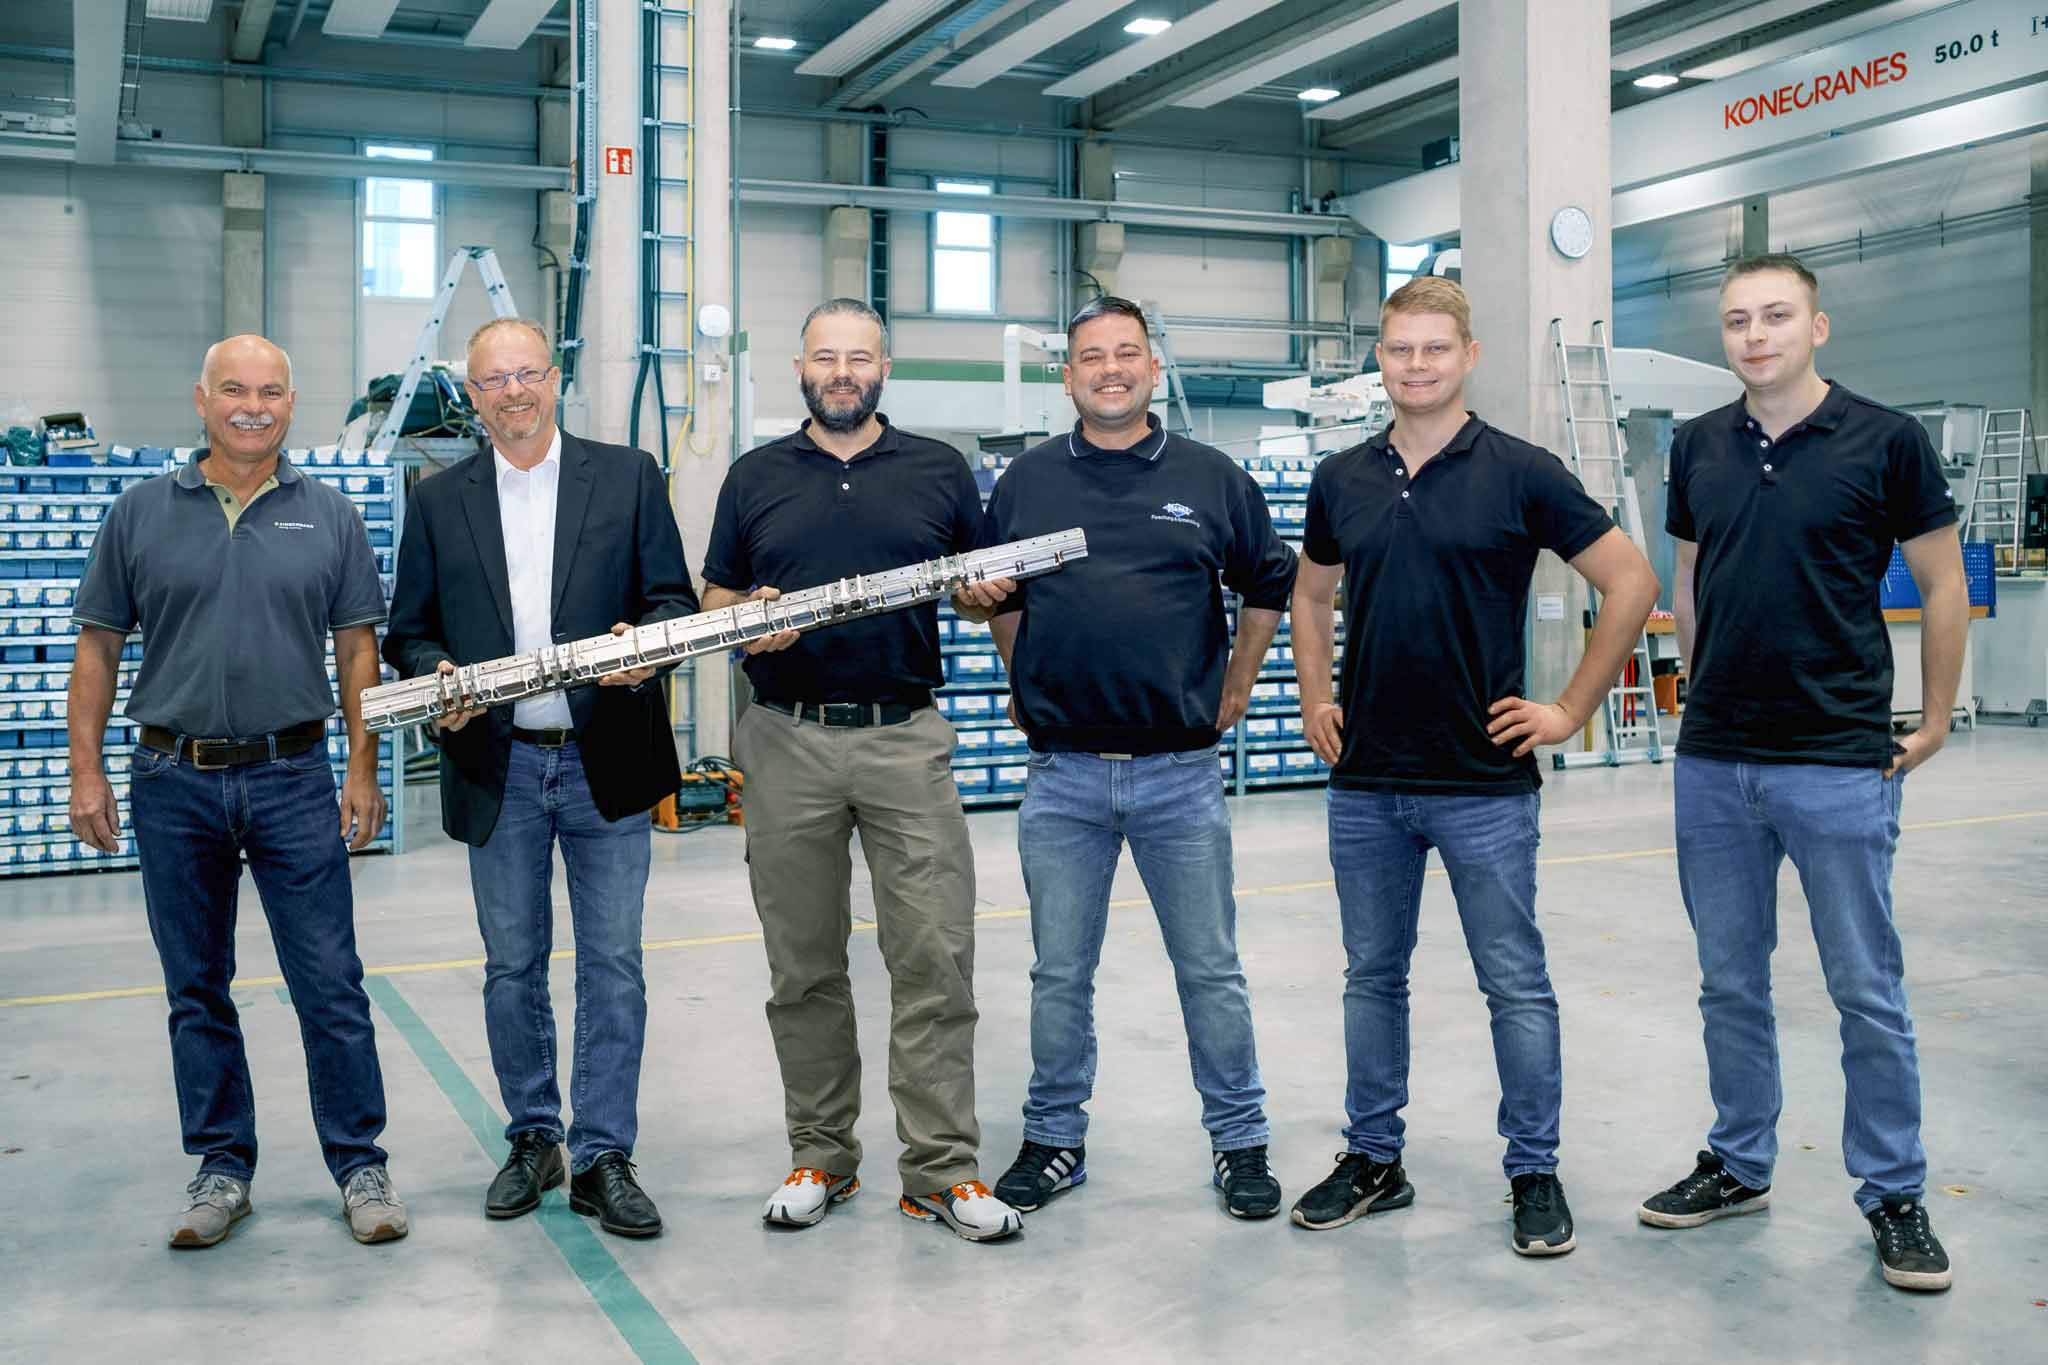 Das Team der Mitarbeiter von Zimmermann und MAPAL: Bernd Scheurenbrand und Steffen Nüssle, sowie Jens Ilg, Andreas Rotenberger, Julian Kraus und Lukas Weiß.